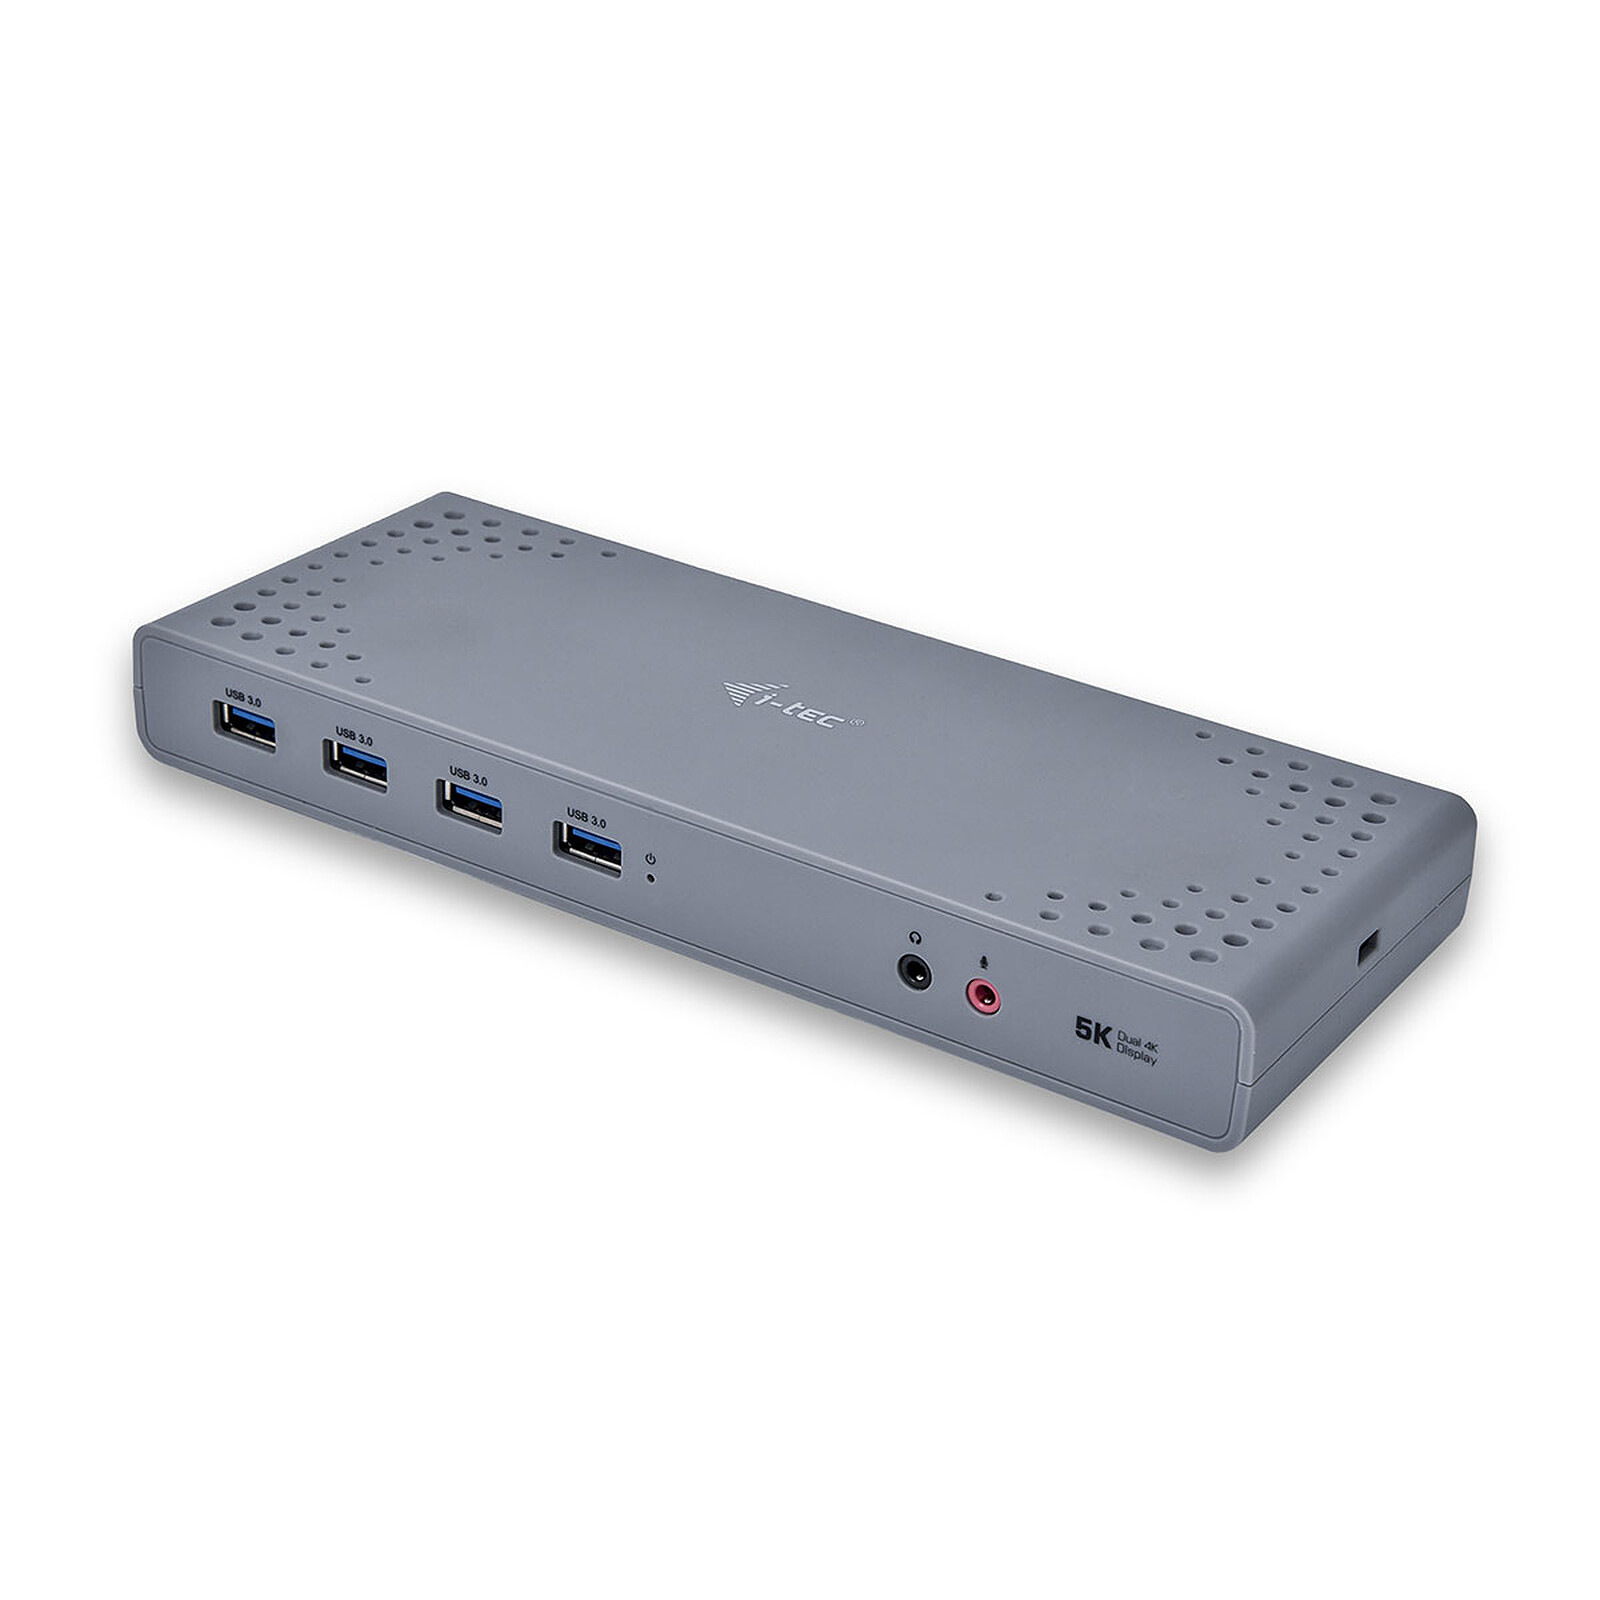 ASUS USB3.0 HZ-3A Docking Station - Station d'accueil PC portable -  Garantie 3 ans LDLC